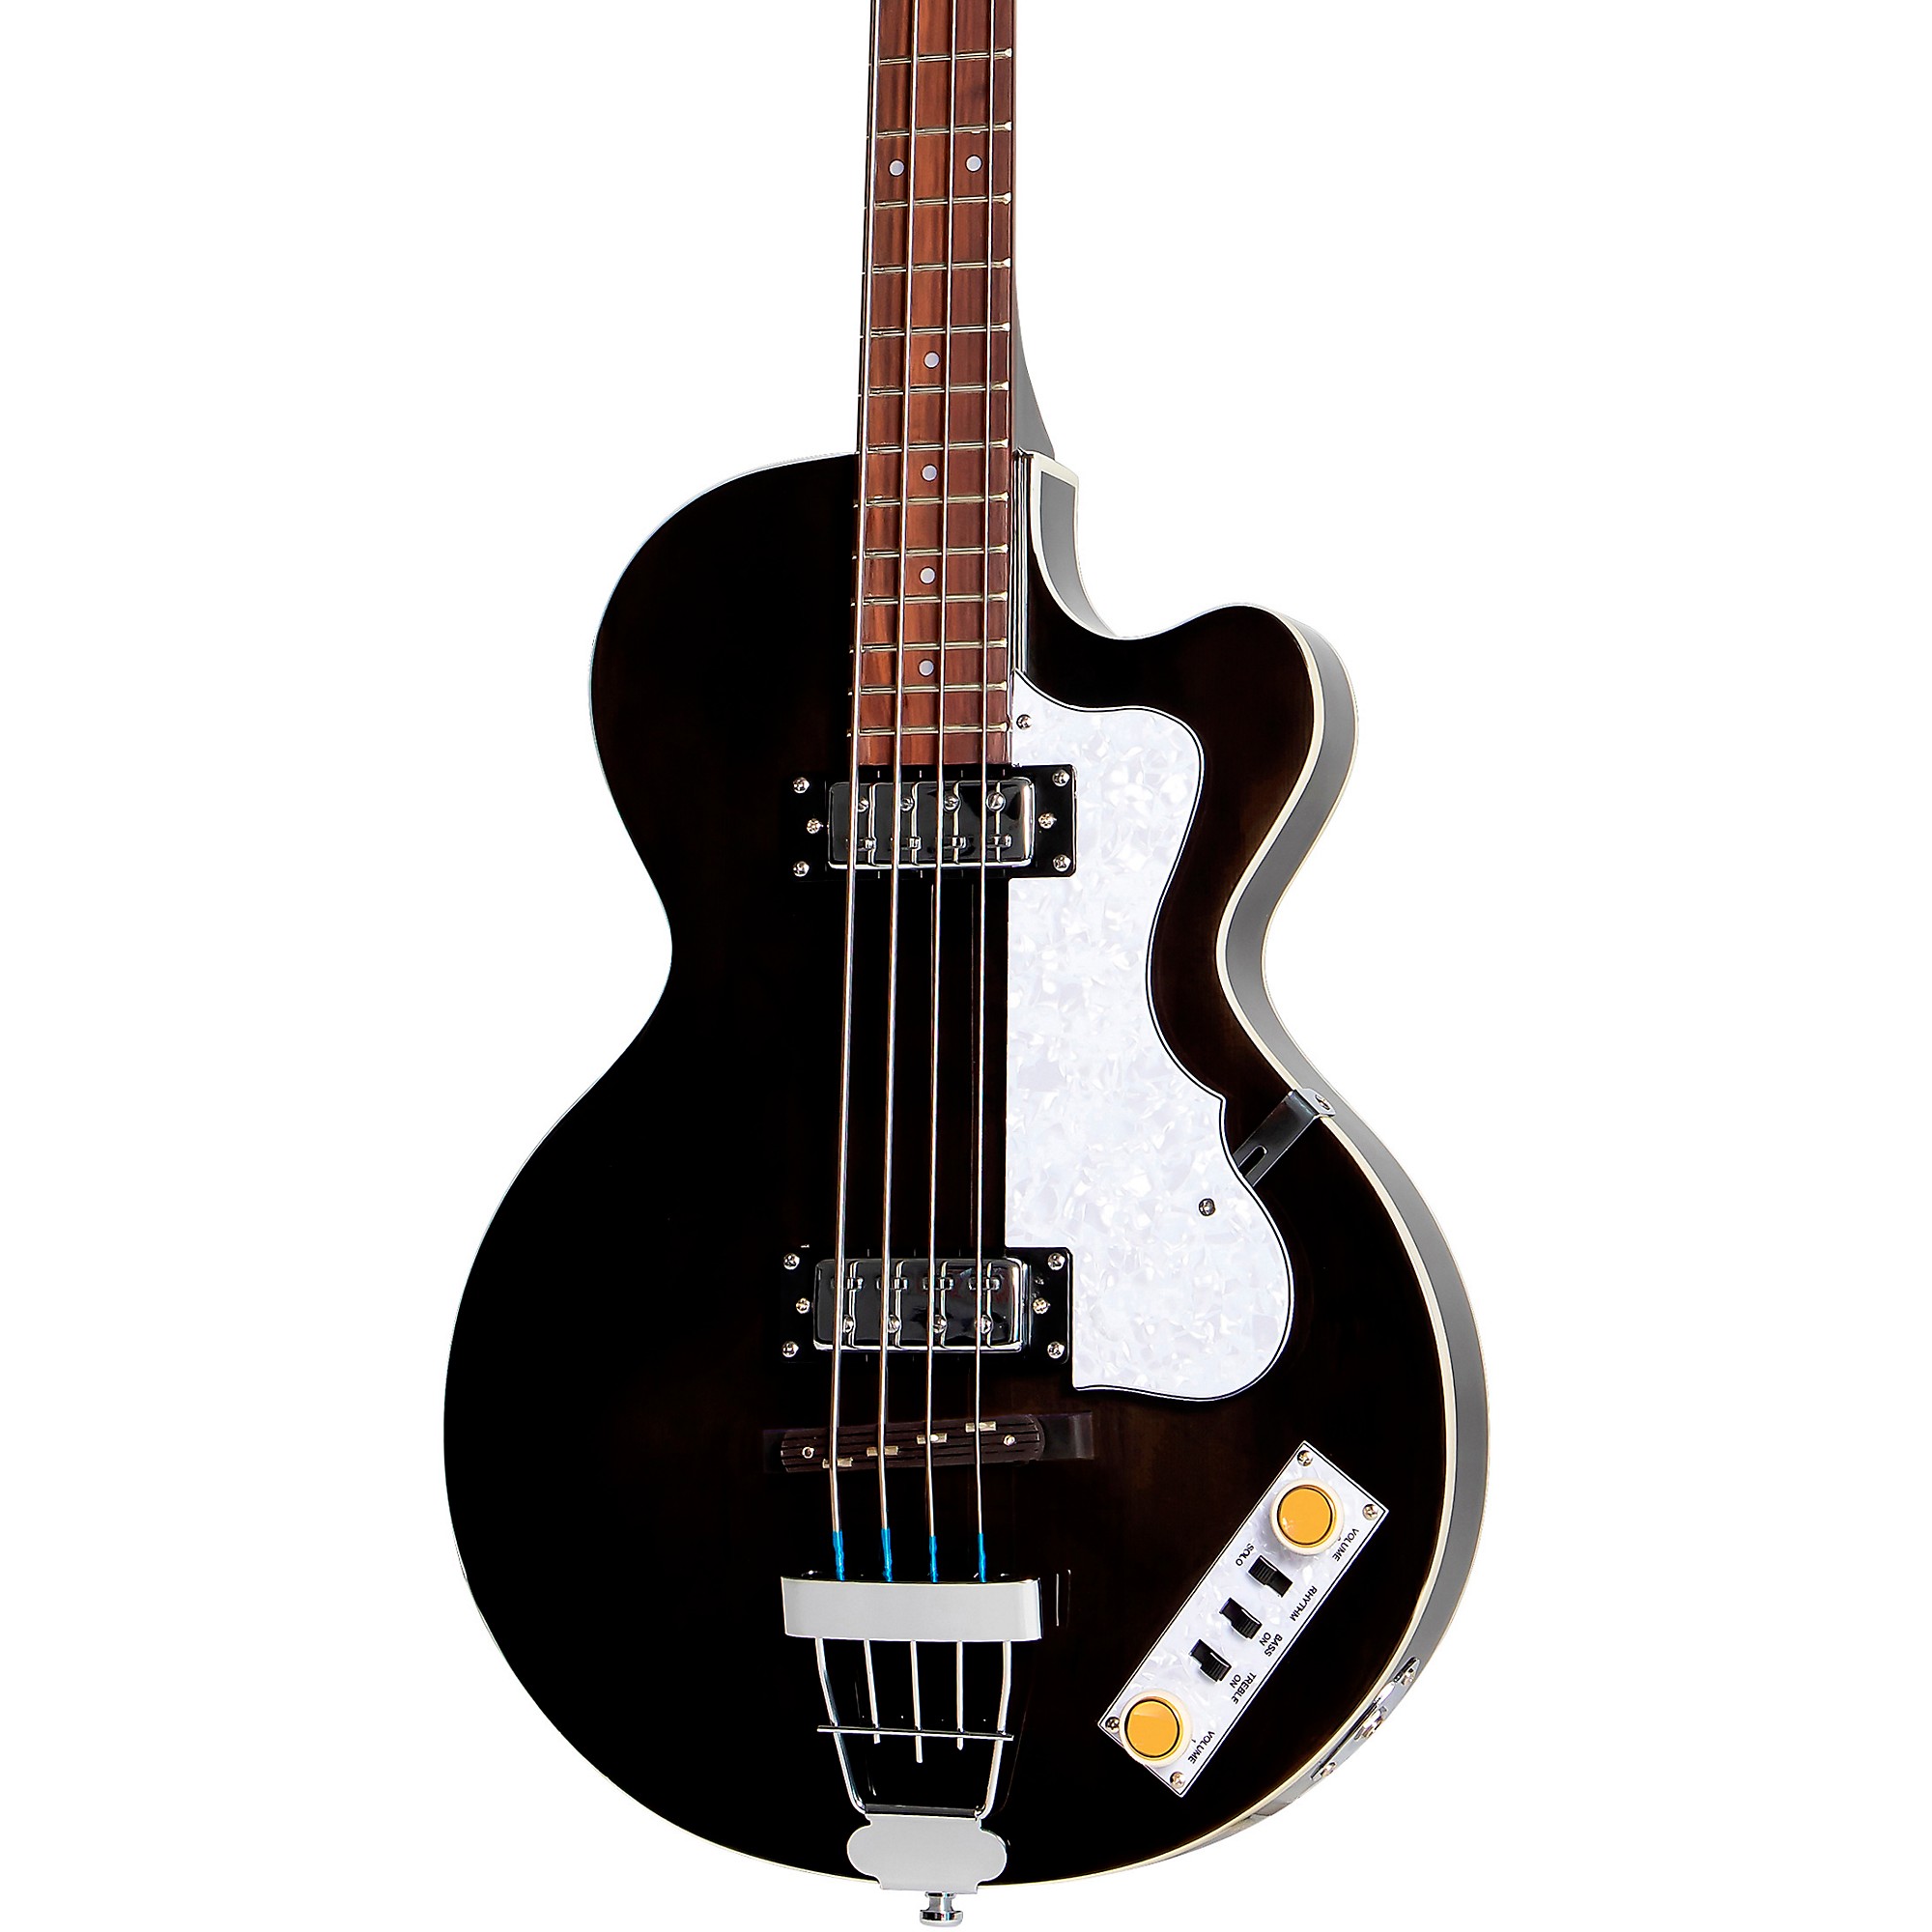 цена Клубный бас-гитара Hofner Ignition Series с короткими мензурами, черный цвет